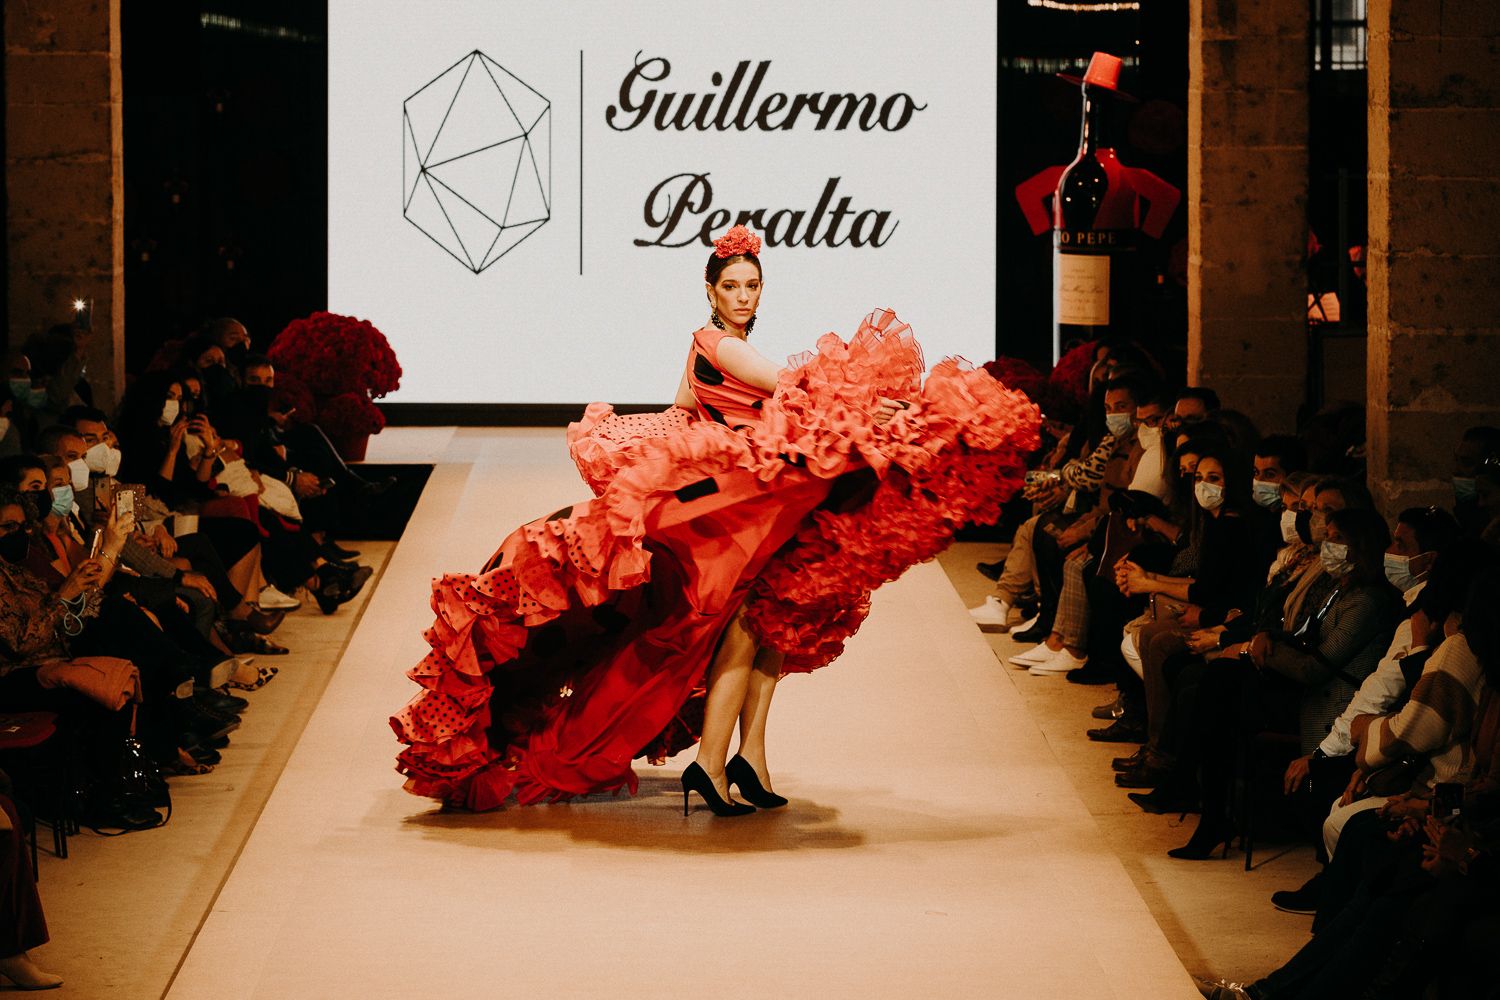 Colección de Guillermo Peralta en la Pasarela de Moda de Tío Pepe. . Pasarela flamenca 2022